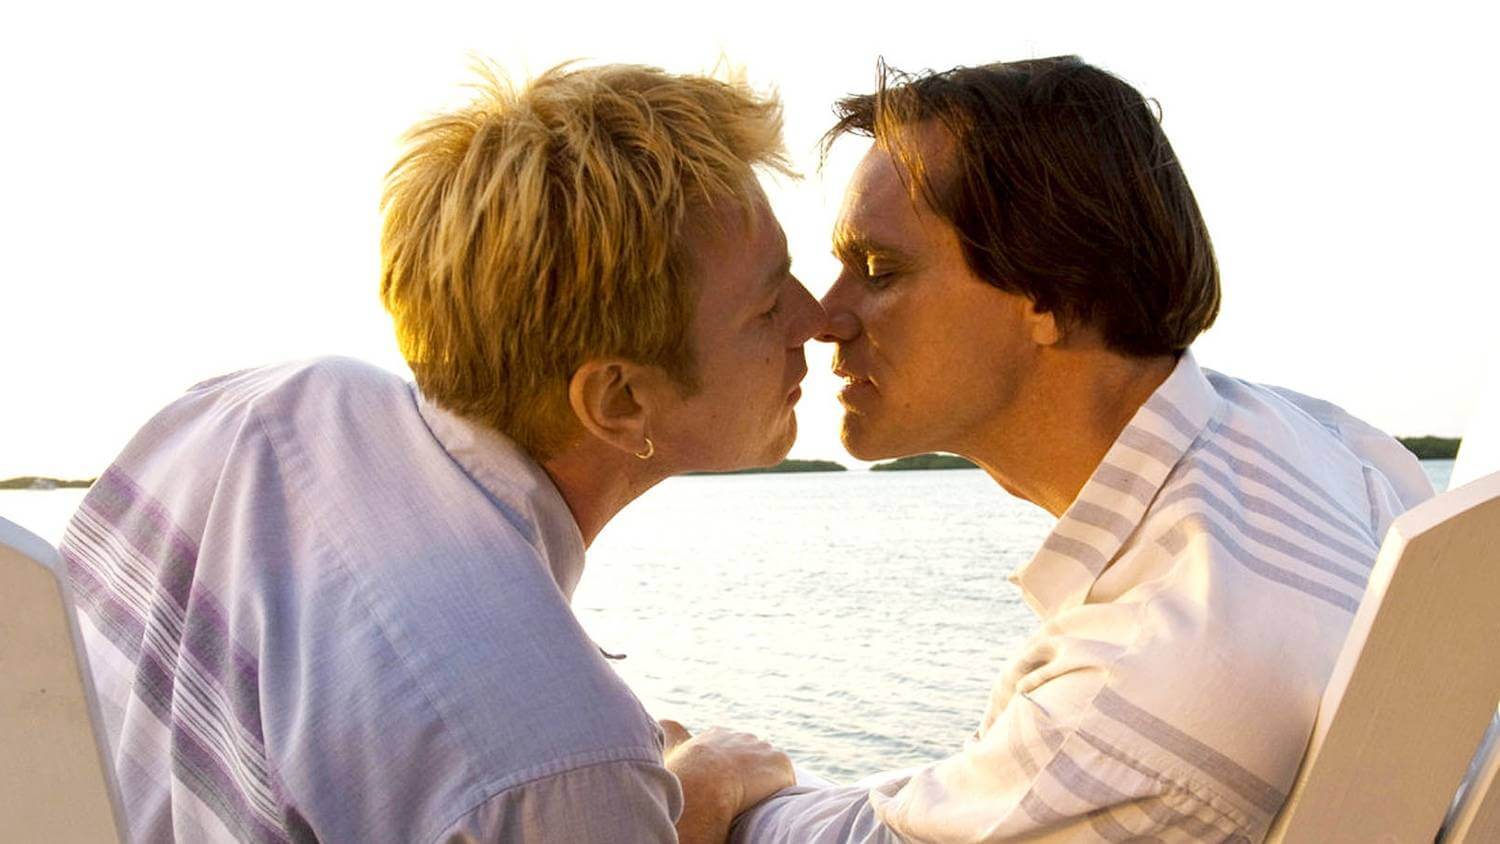 20 film LGBT da vedere su Amazon Prime Video - I Love You Phillip Morris 1 - Gay.it